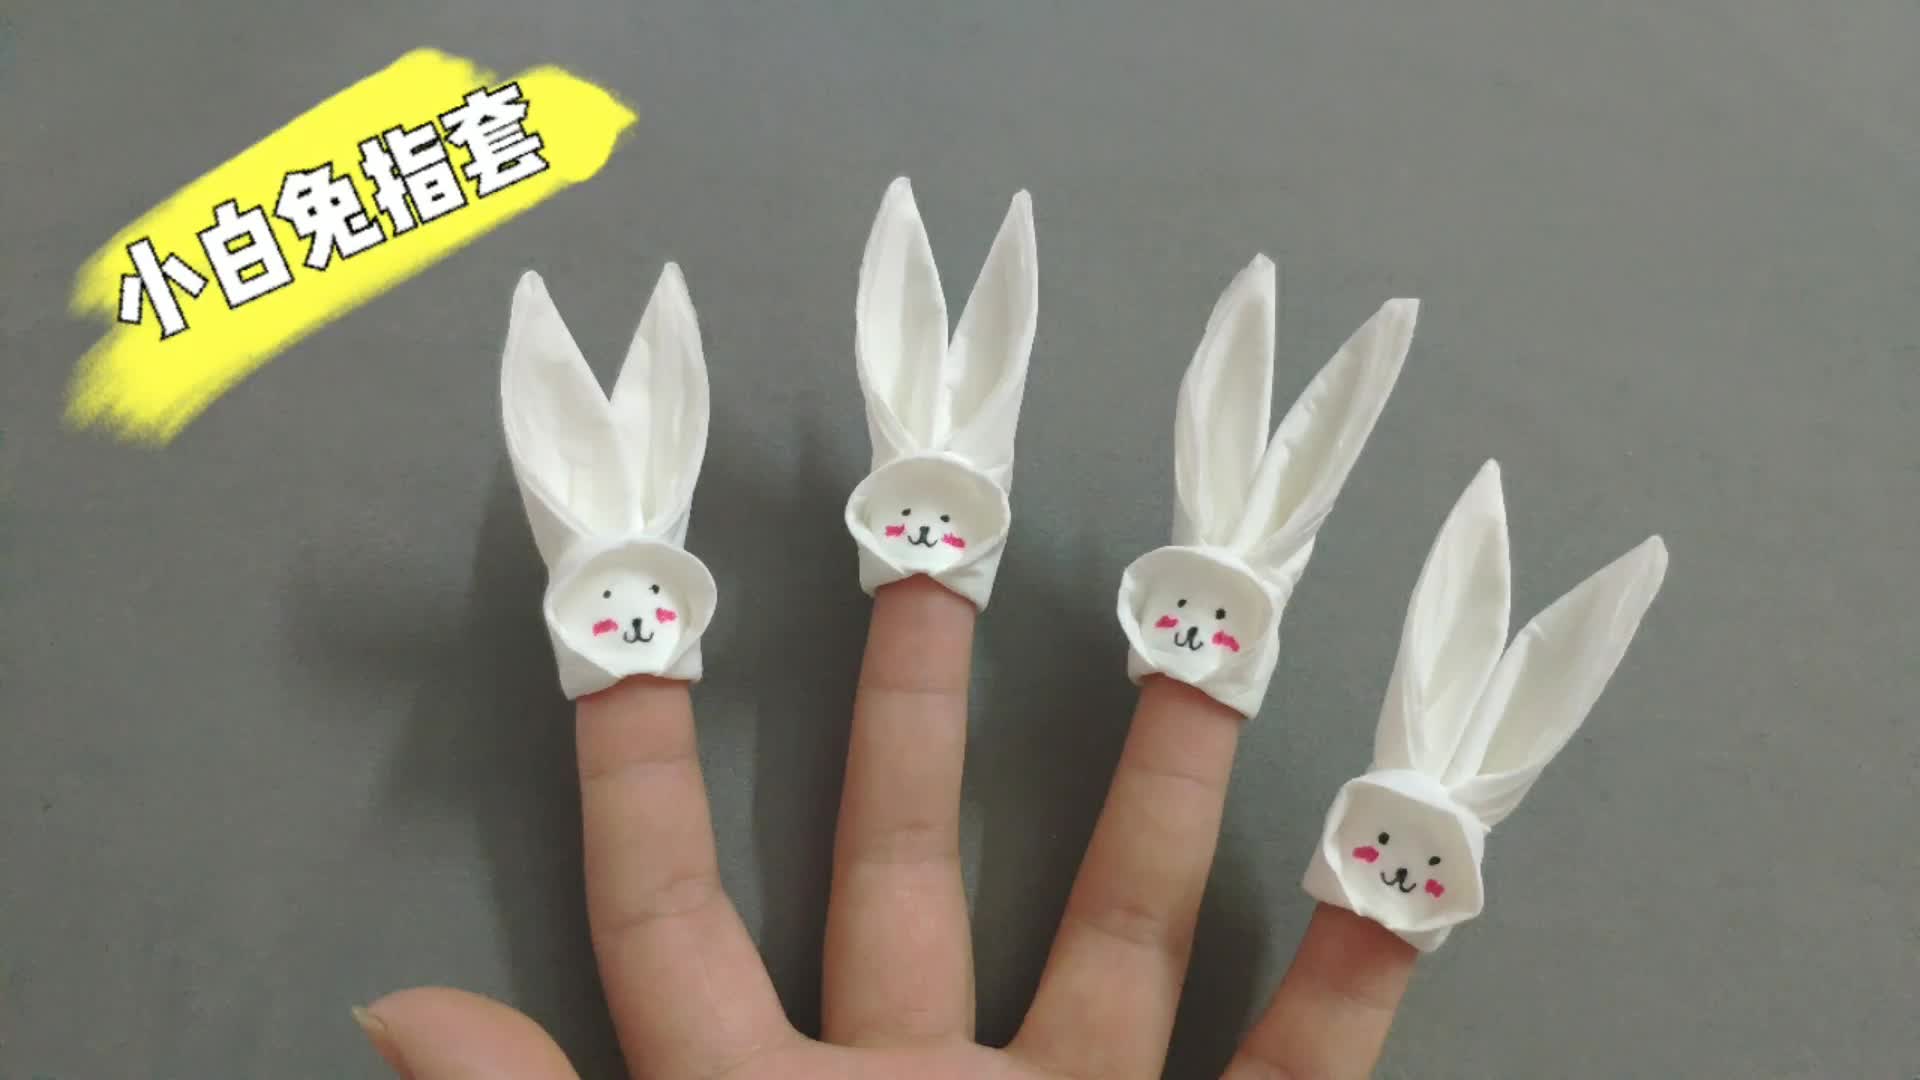 手工折纸 #折纸教程 一张抽纸就可以折出漂亮的小兔子指套,小兔子